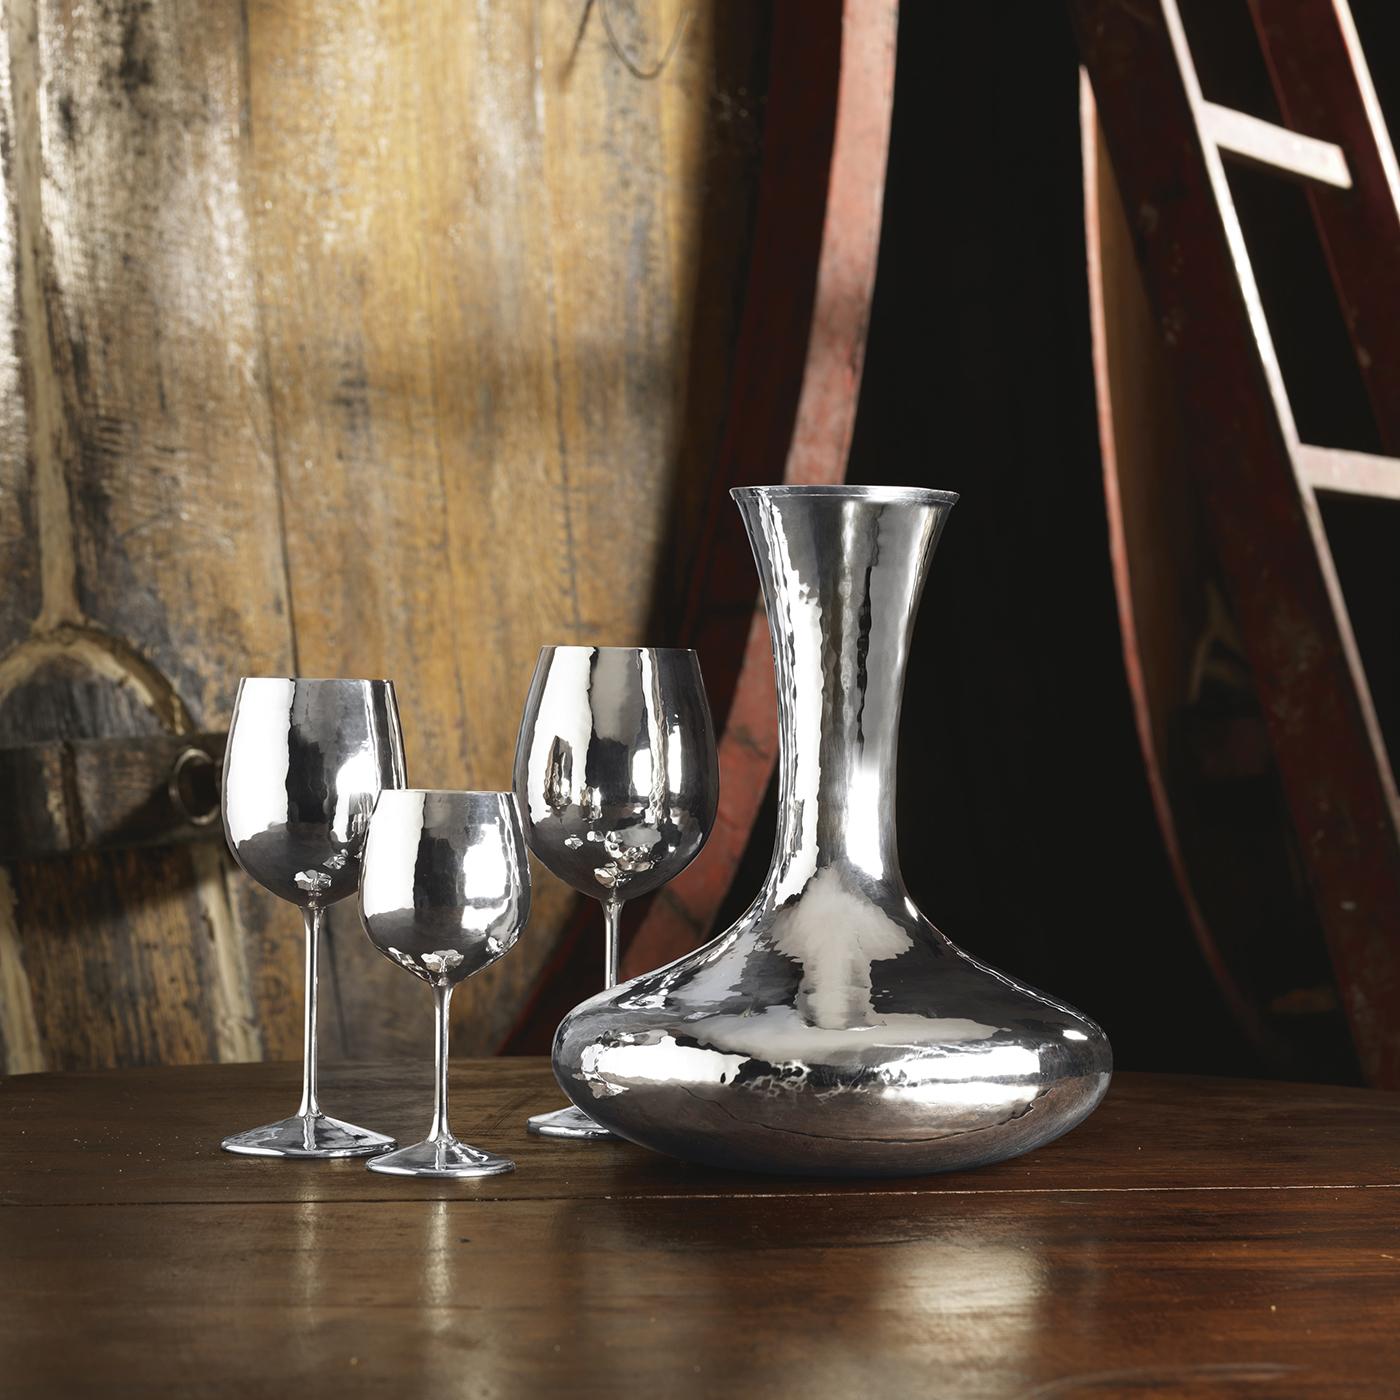 Ein elegantes und raffiniertes silbernes Weinglas. Dieser schlichte, minimalistische Artikel hebt das Bouquet und den Geschmack des Getränks hervor, ohne dessen Aroma oder Geschmack zu verändern. Silber ist für seine antibakteriellen und